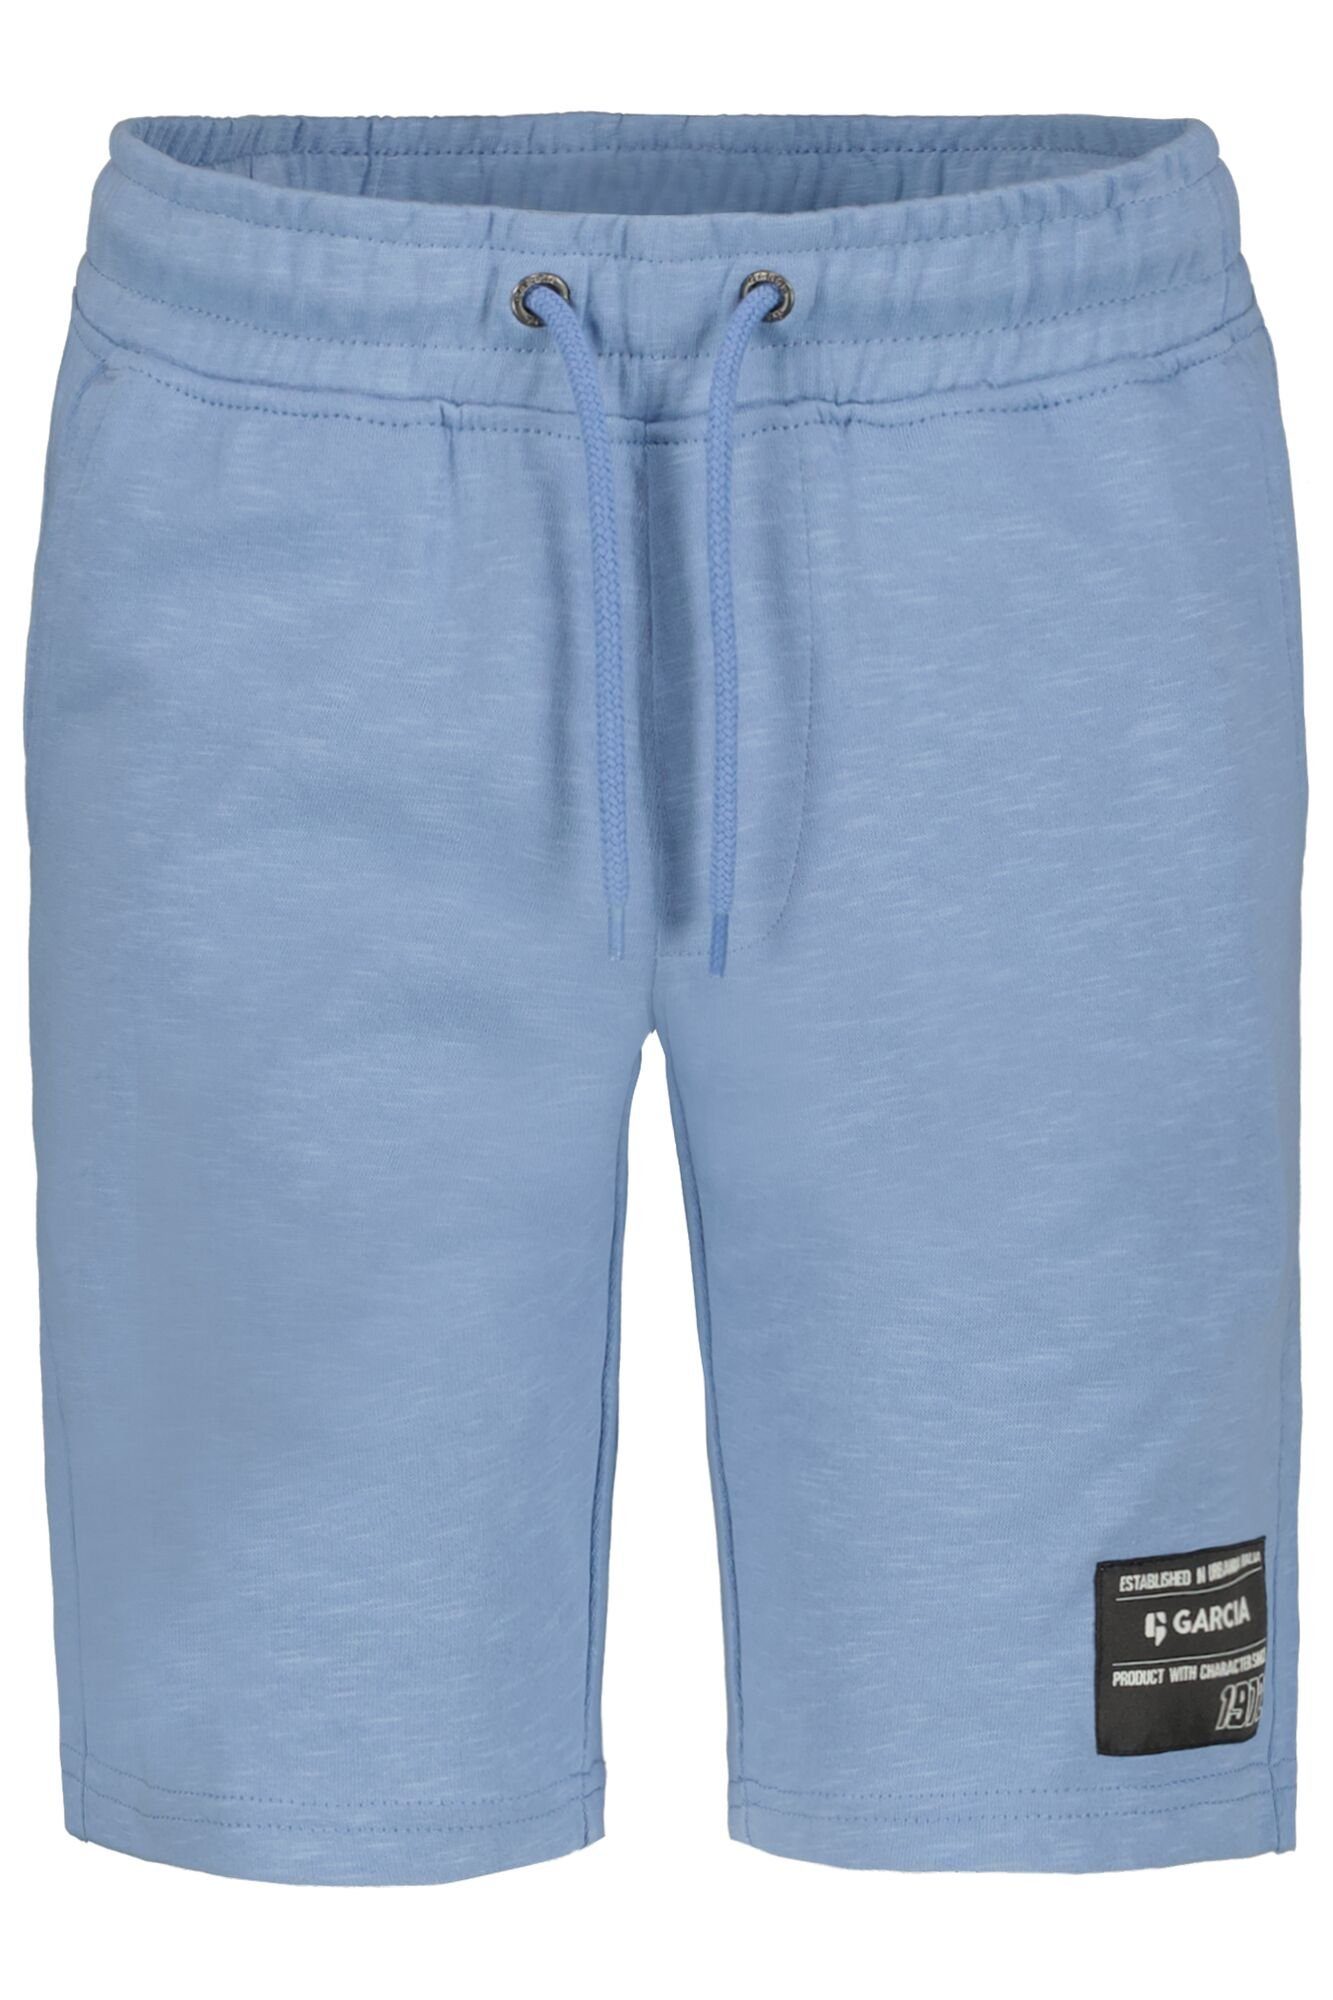 Garcia Shorts mit Seitentaschen canal blue